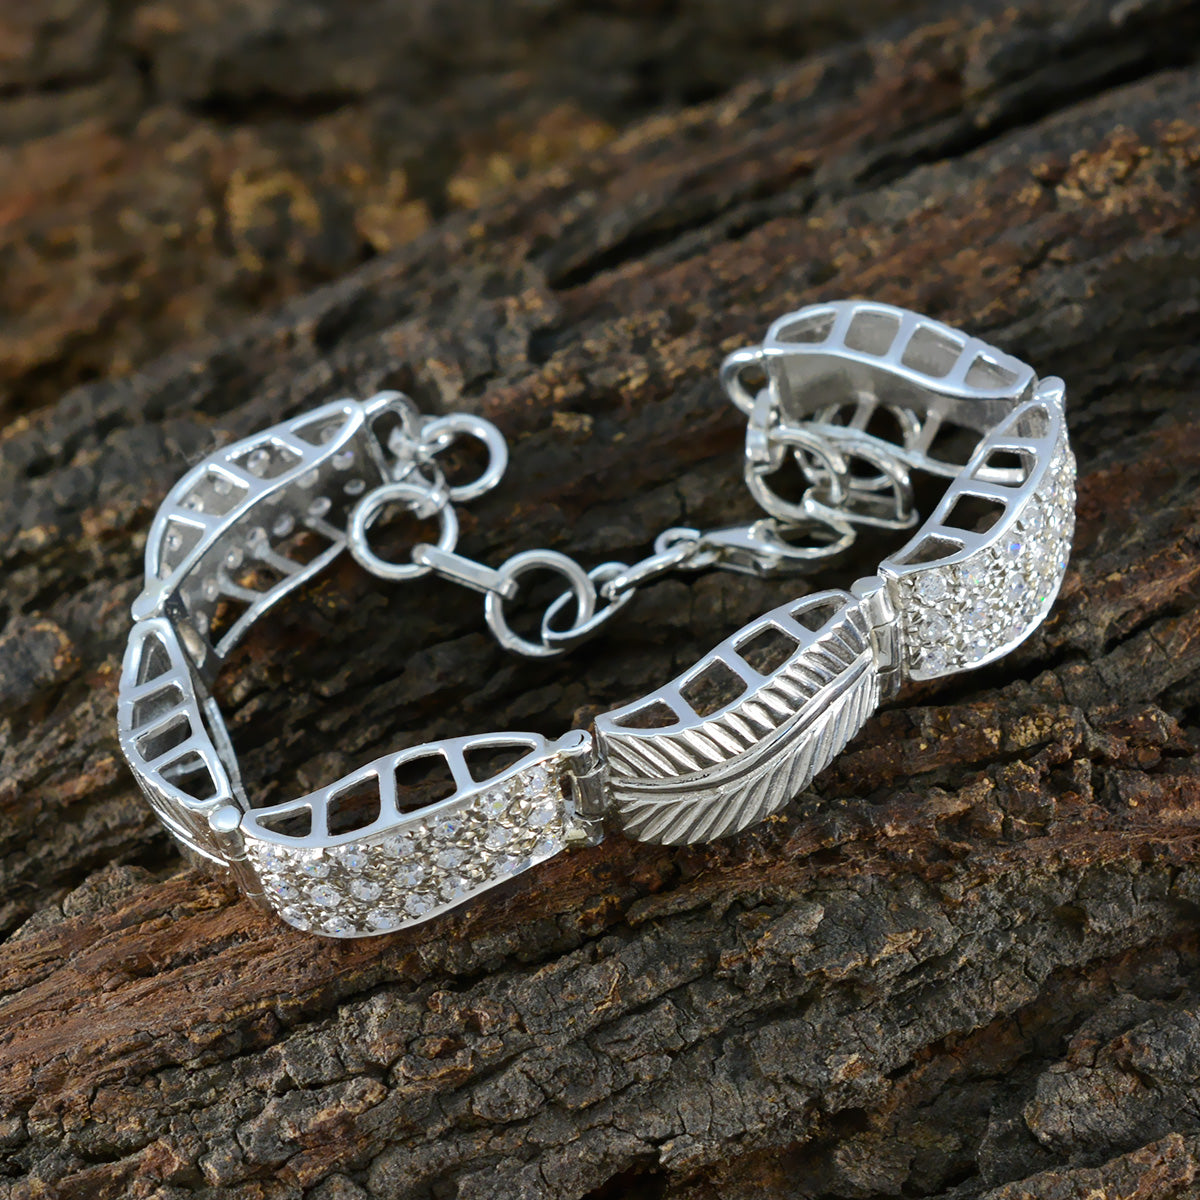 Очаровательный браслет riyo из стерлингового серебра 925 пробы для девочек, белый браслет с цирконием, безель, браслет с рыбьим крючком, браслет l, размер 6-8,5 дюйма.